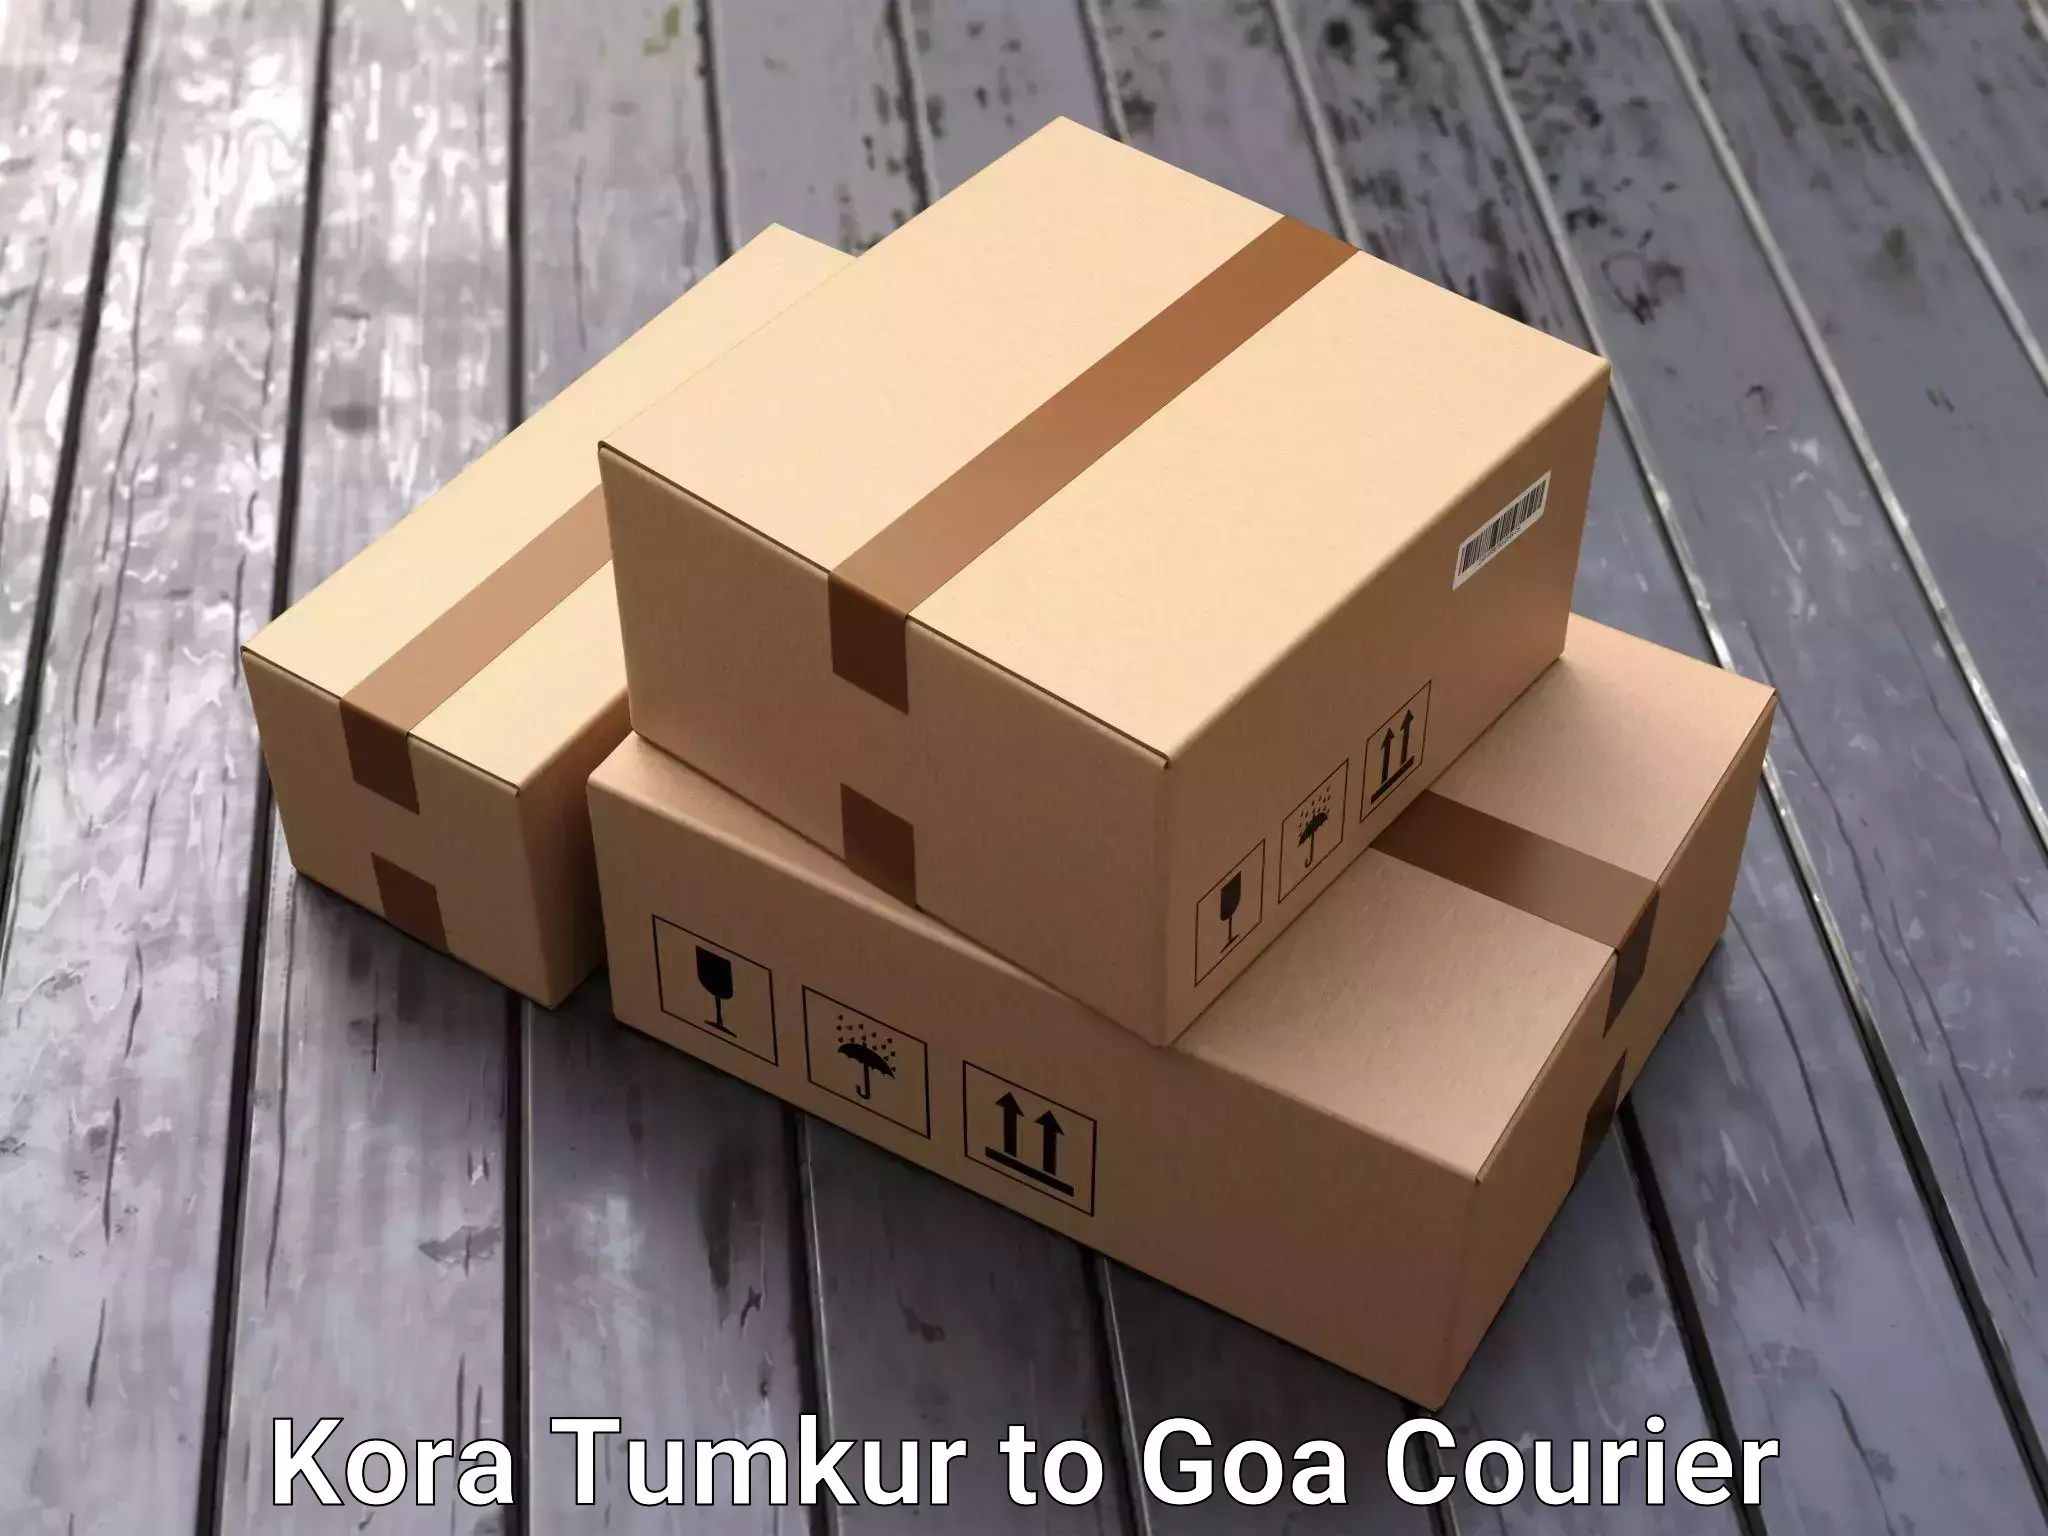 Specialized household transport Kora Tumkur to Goa